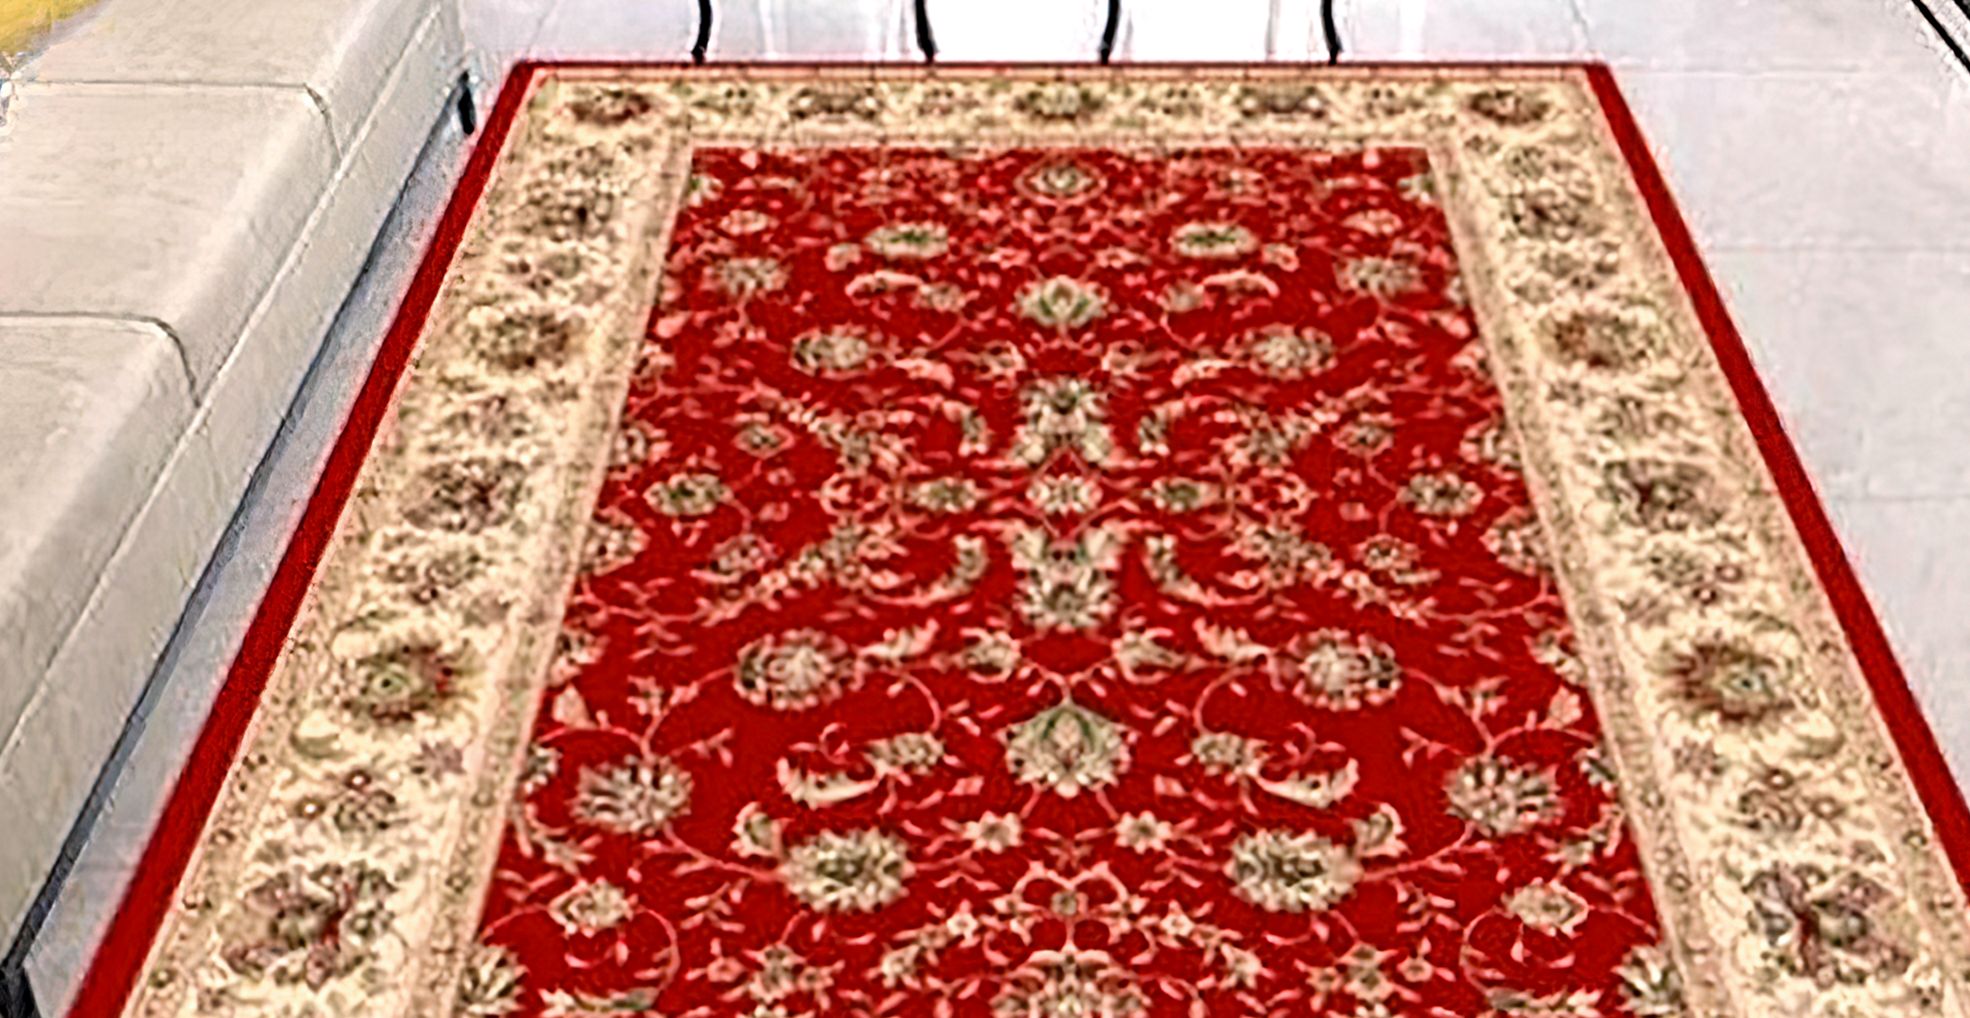 Подсмотрела у турков необычный способ чистки ковров. Теперь половики в доме всегда свежие, без пыли и шерсти